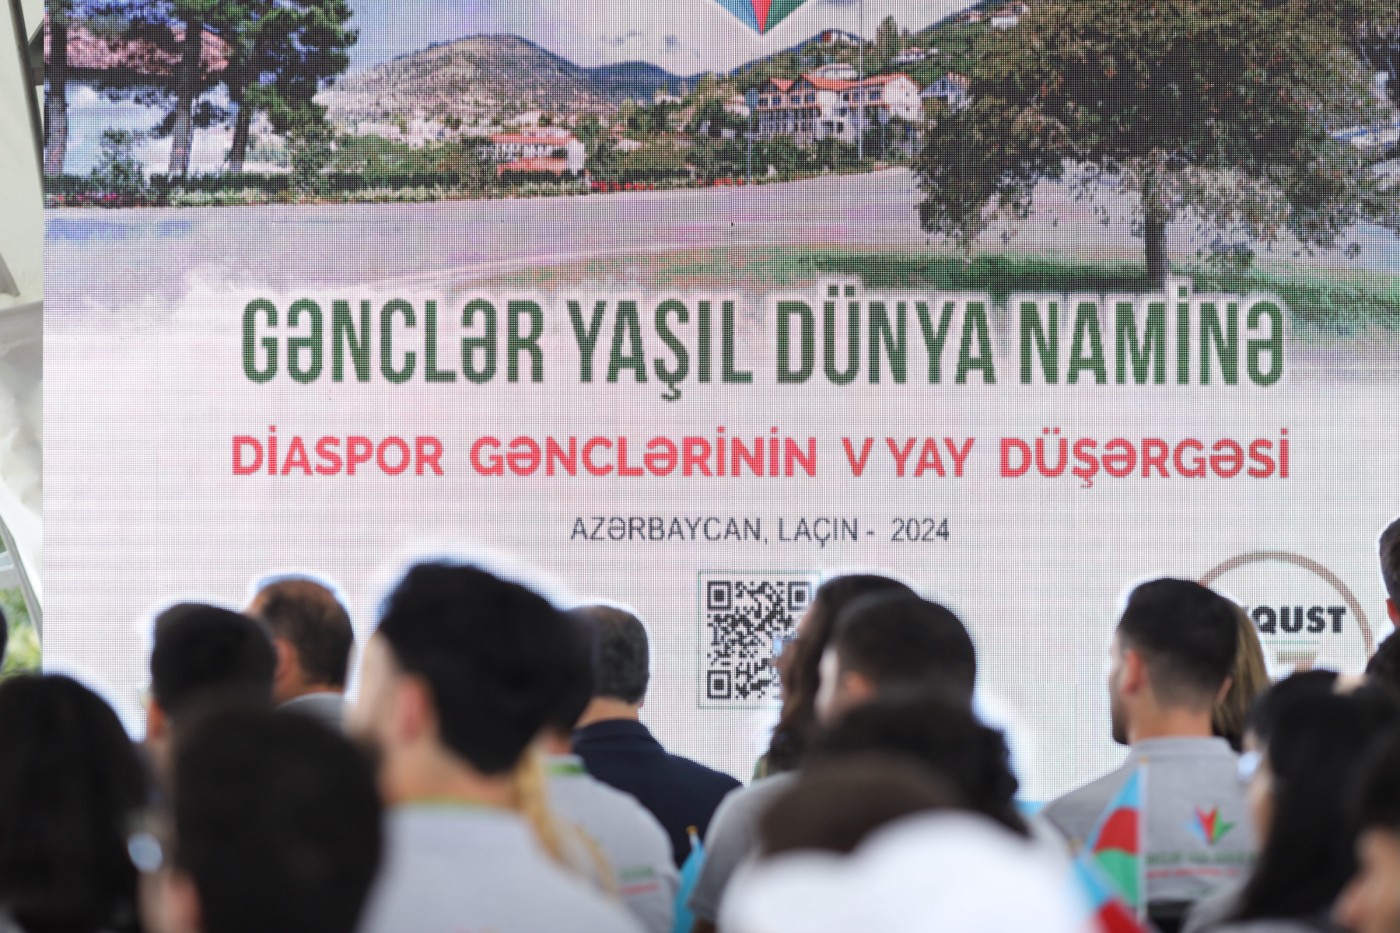 Diaspor Gənclərinin V Yay Düşərgəsinin rəsmi açılış mərasimi keçirilib - FOTOLAR